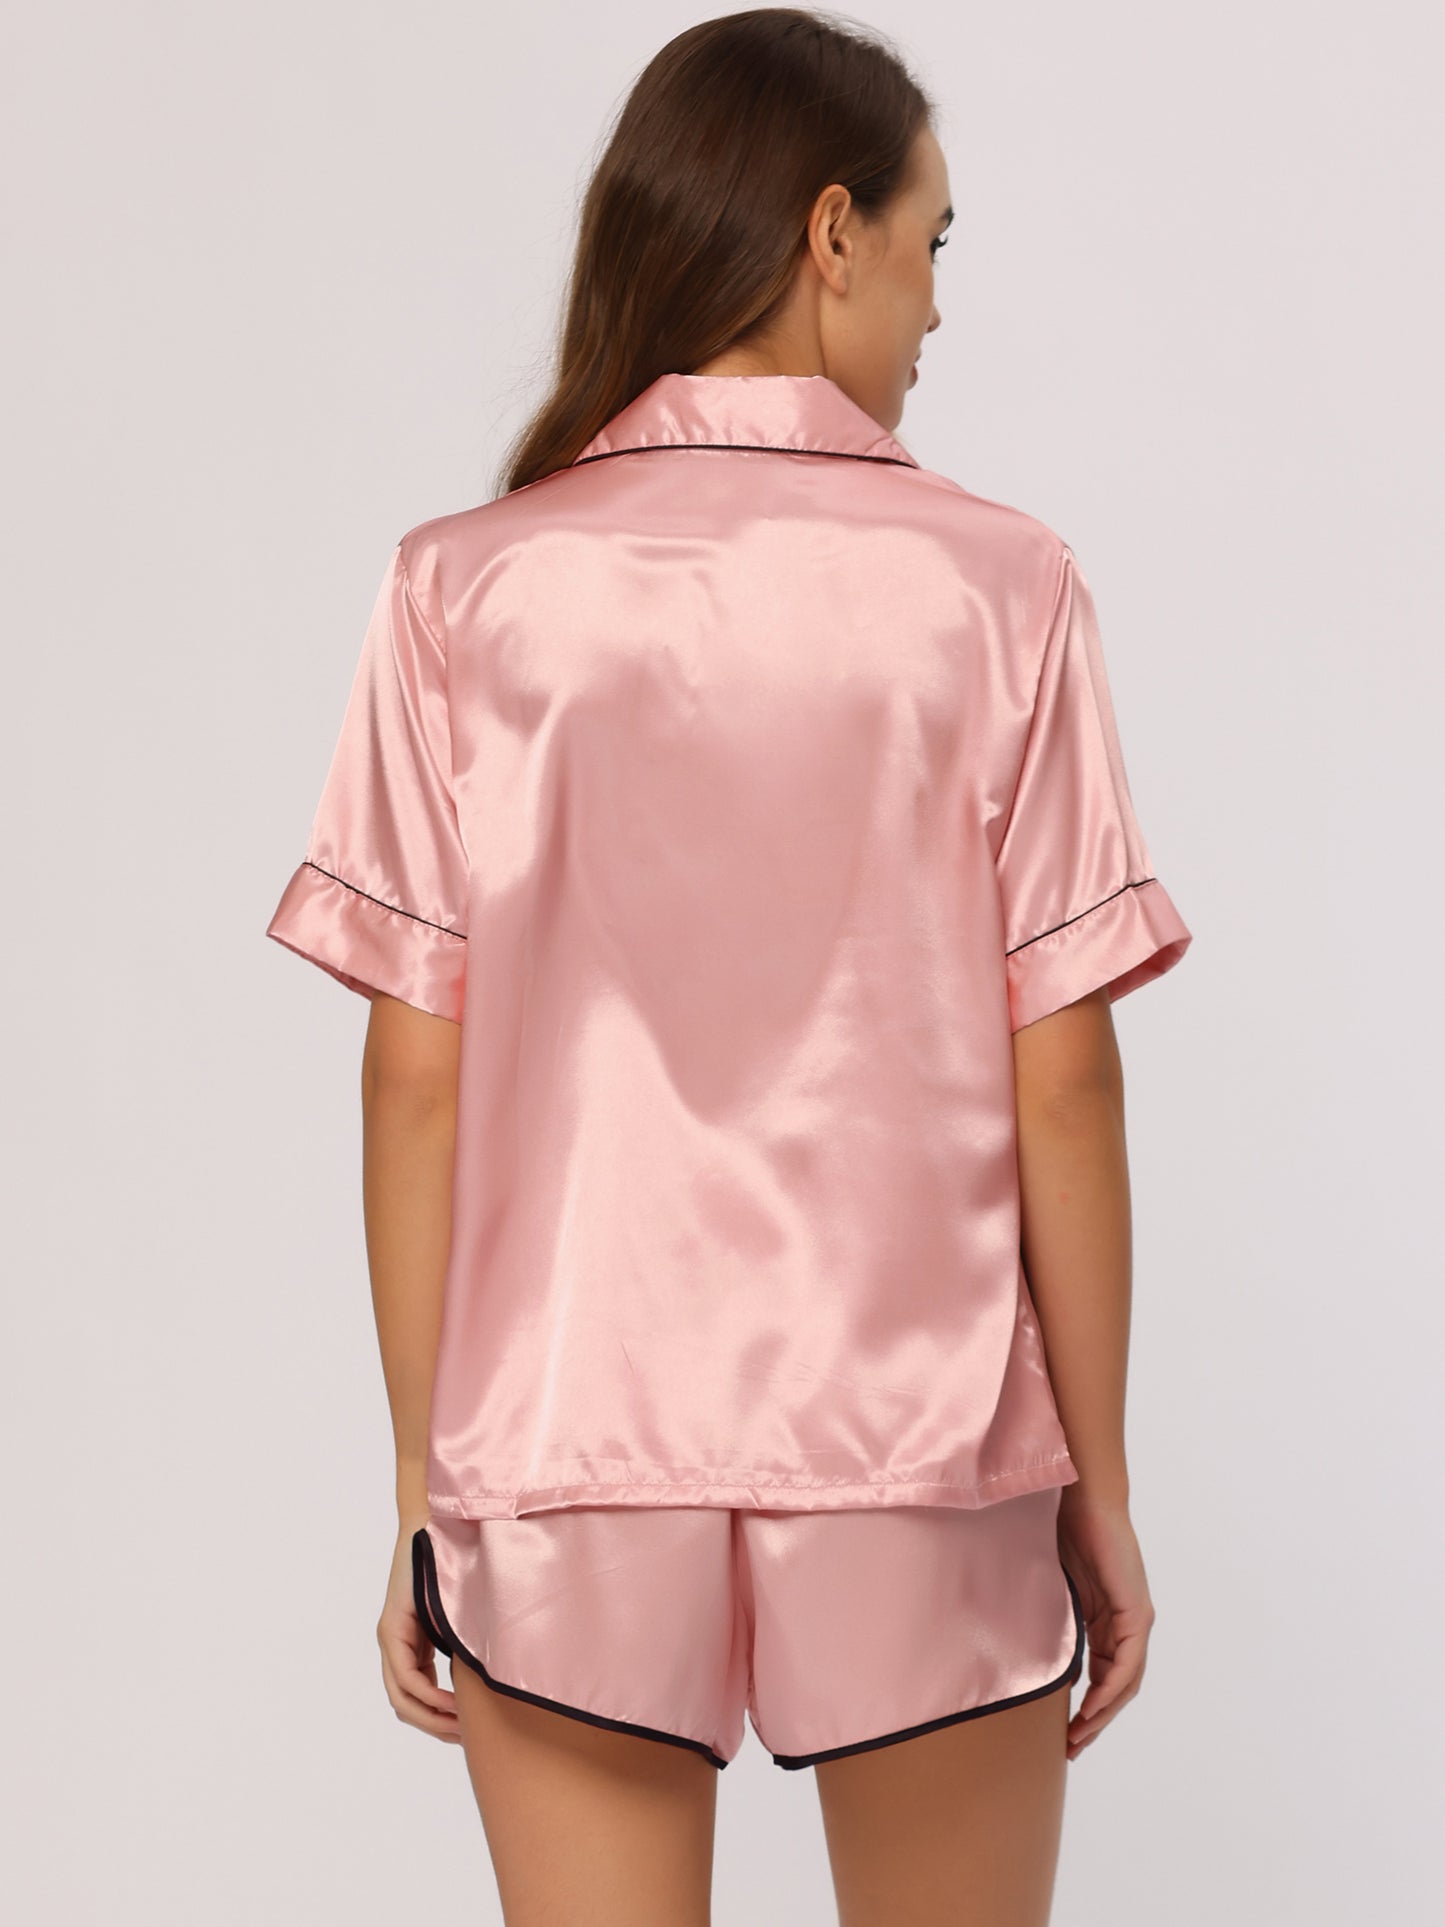 cheibear Satin 2pcs Lounge Sleepwear T-Shirt and Shorts Polka Dots Pajama Sets Pink